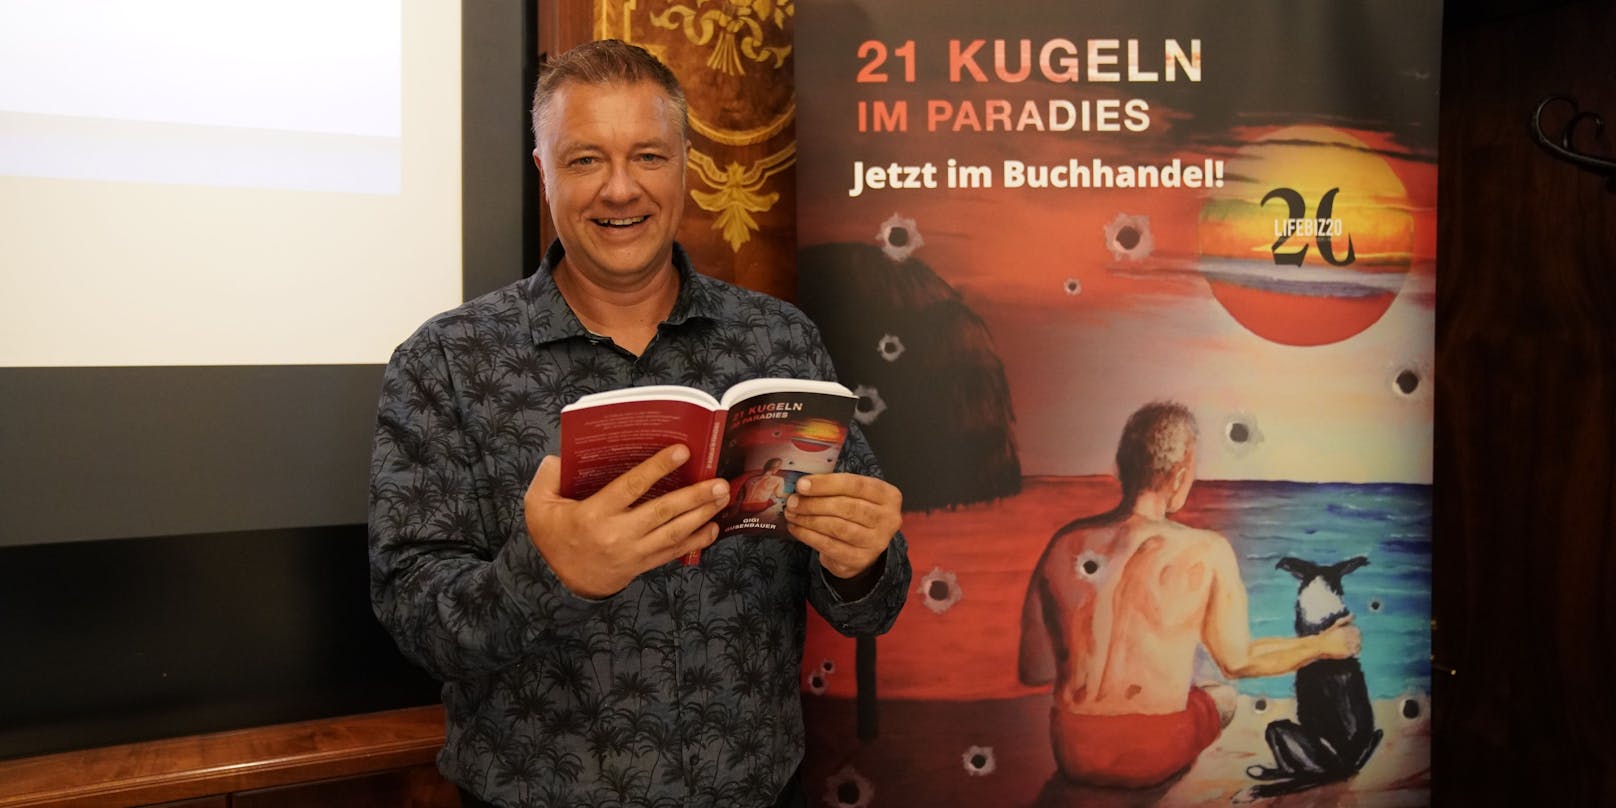 Christian "Gigi" Gusenbauer überlebte eine Homeinvasion in Belize, schrieb darüber ein Buch und kehrte nun zurück nach Österreich.